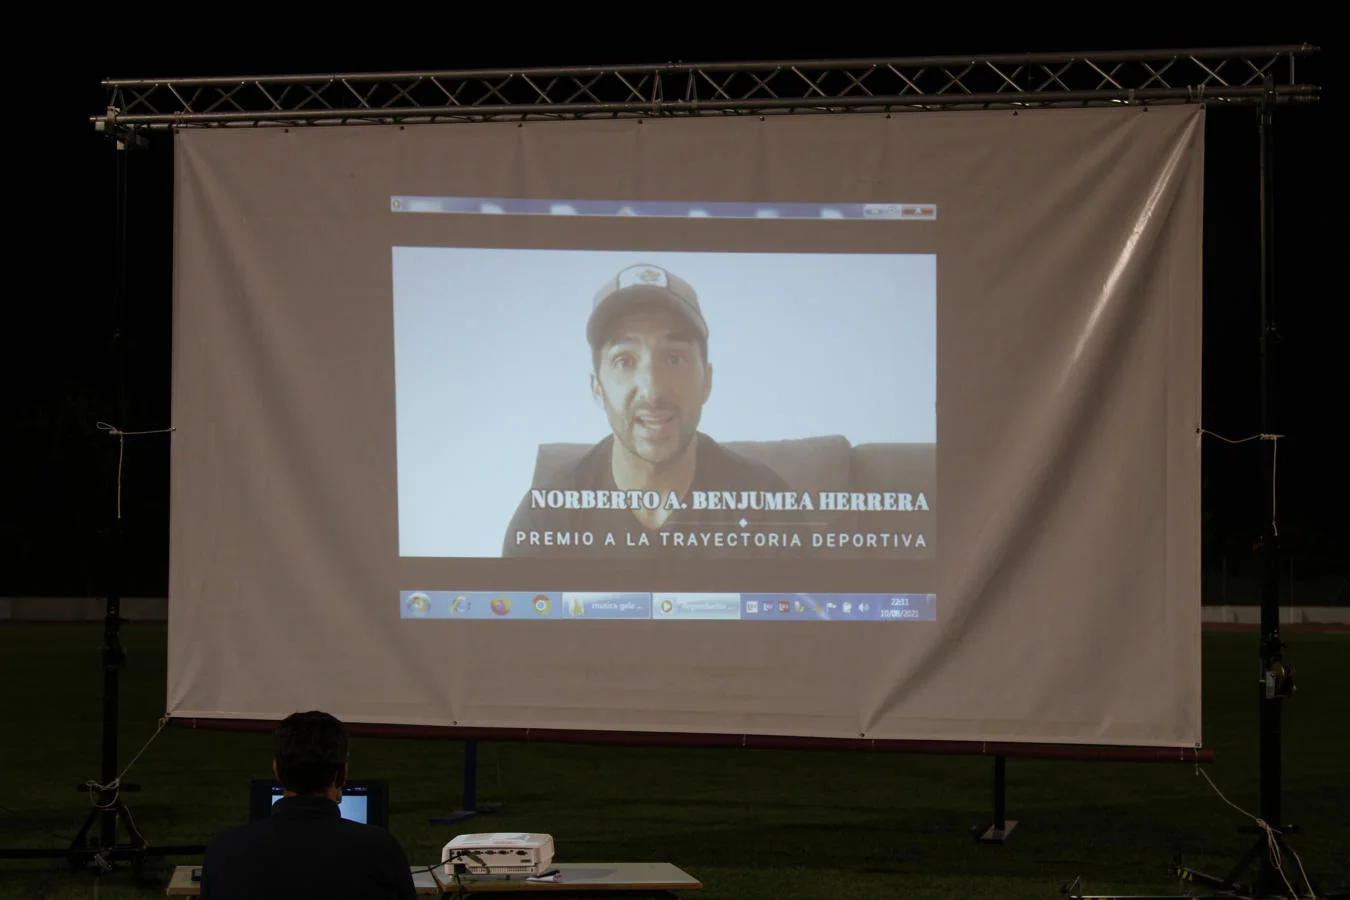 Norberto Benjumea, exfutbolista del Llerenense y actual entrenador en la Escuela de Fútbol del club, agradece el Premio Trayectoria Deportiva a través de un vídeo